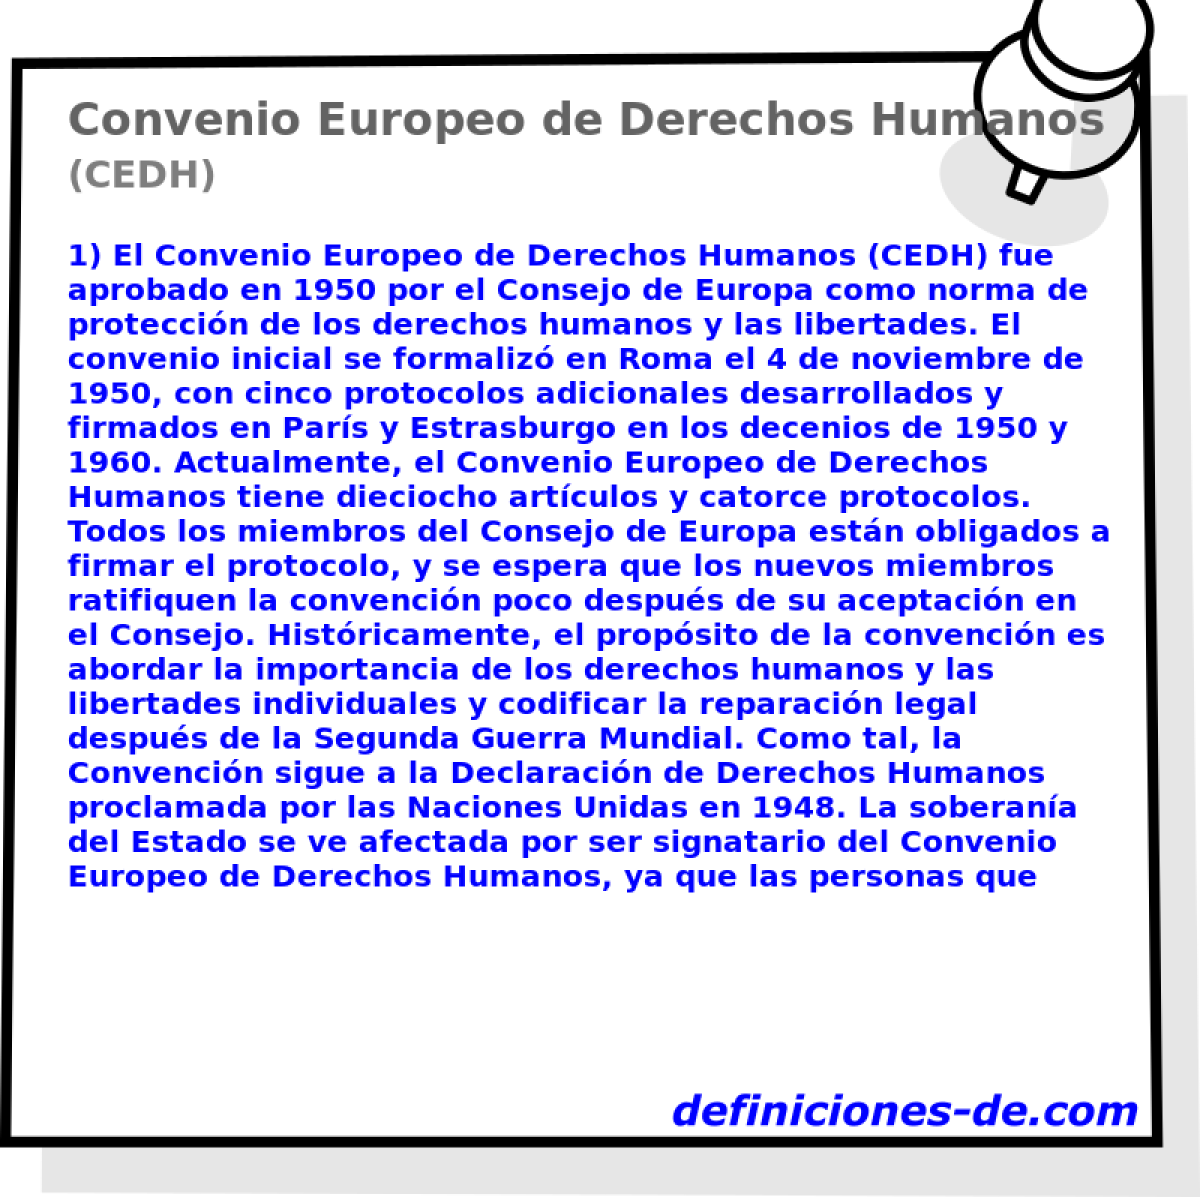 Convenio Europeo de Derechos Humanos (CEDH)